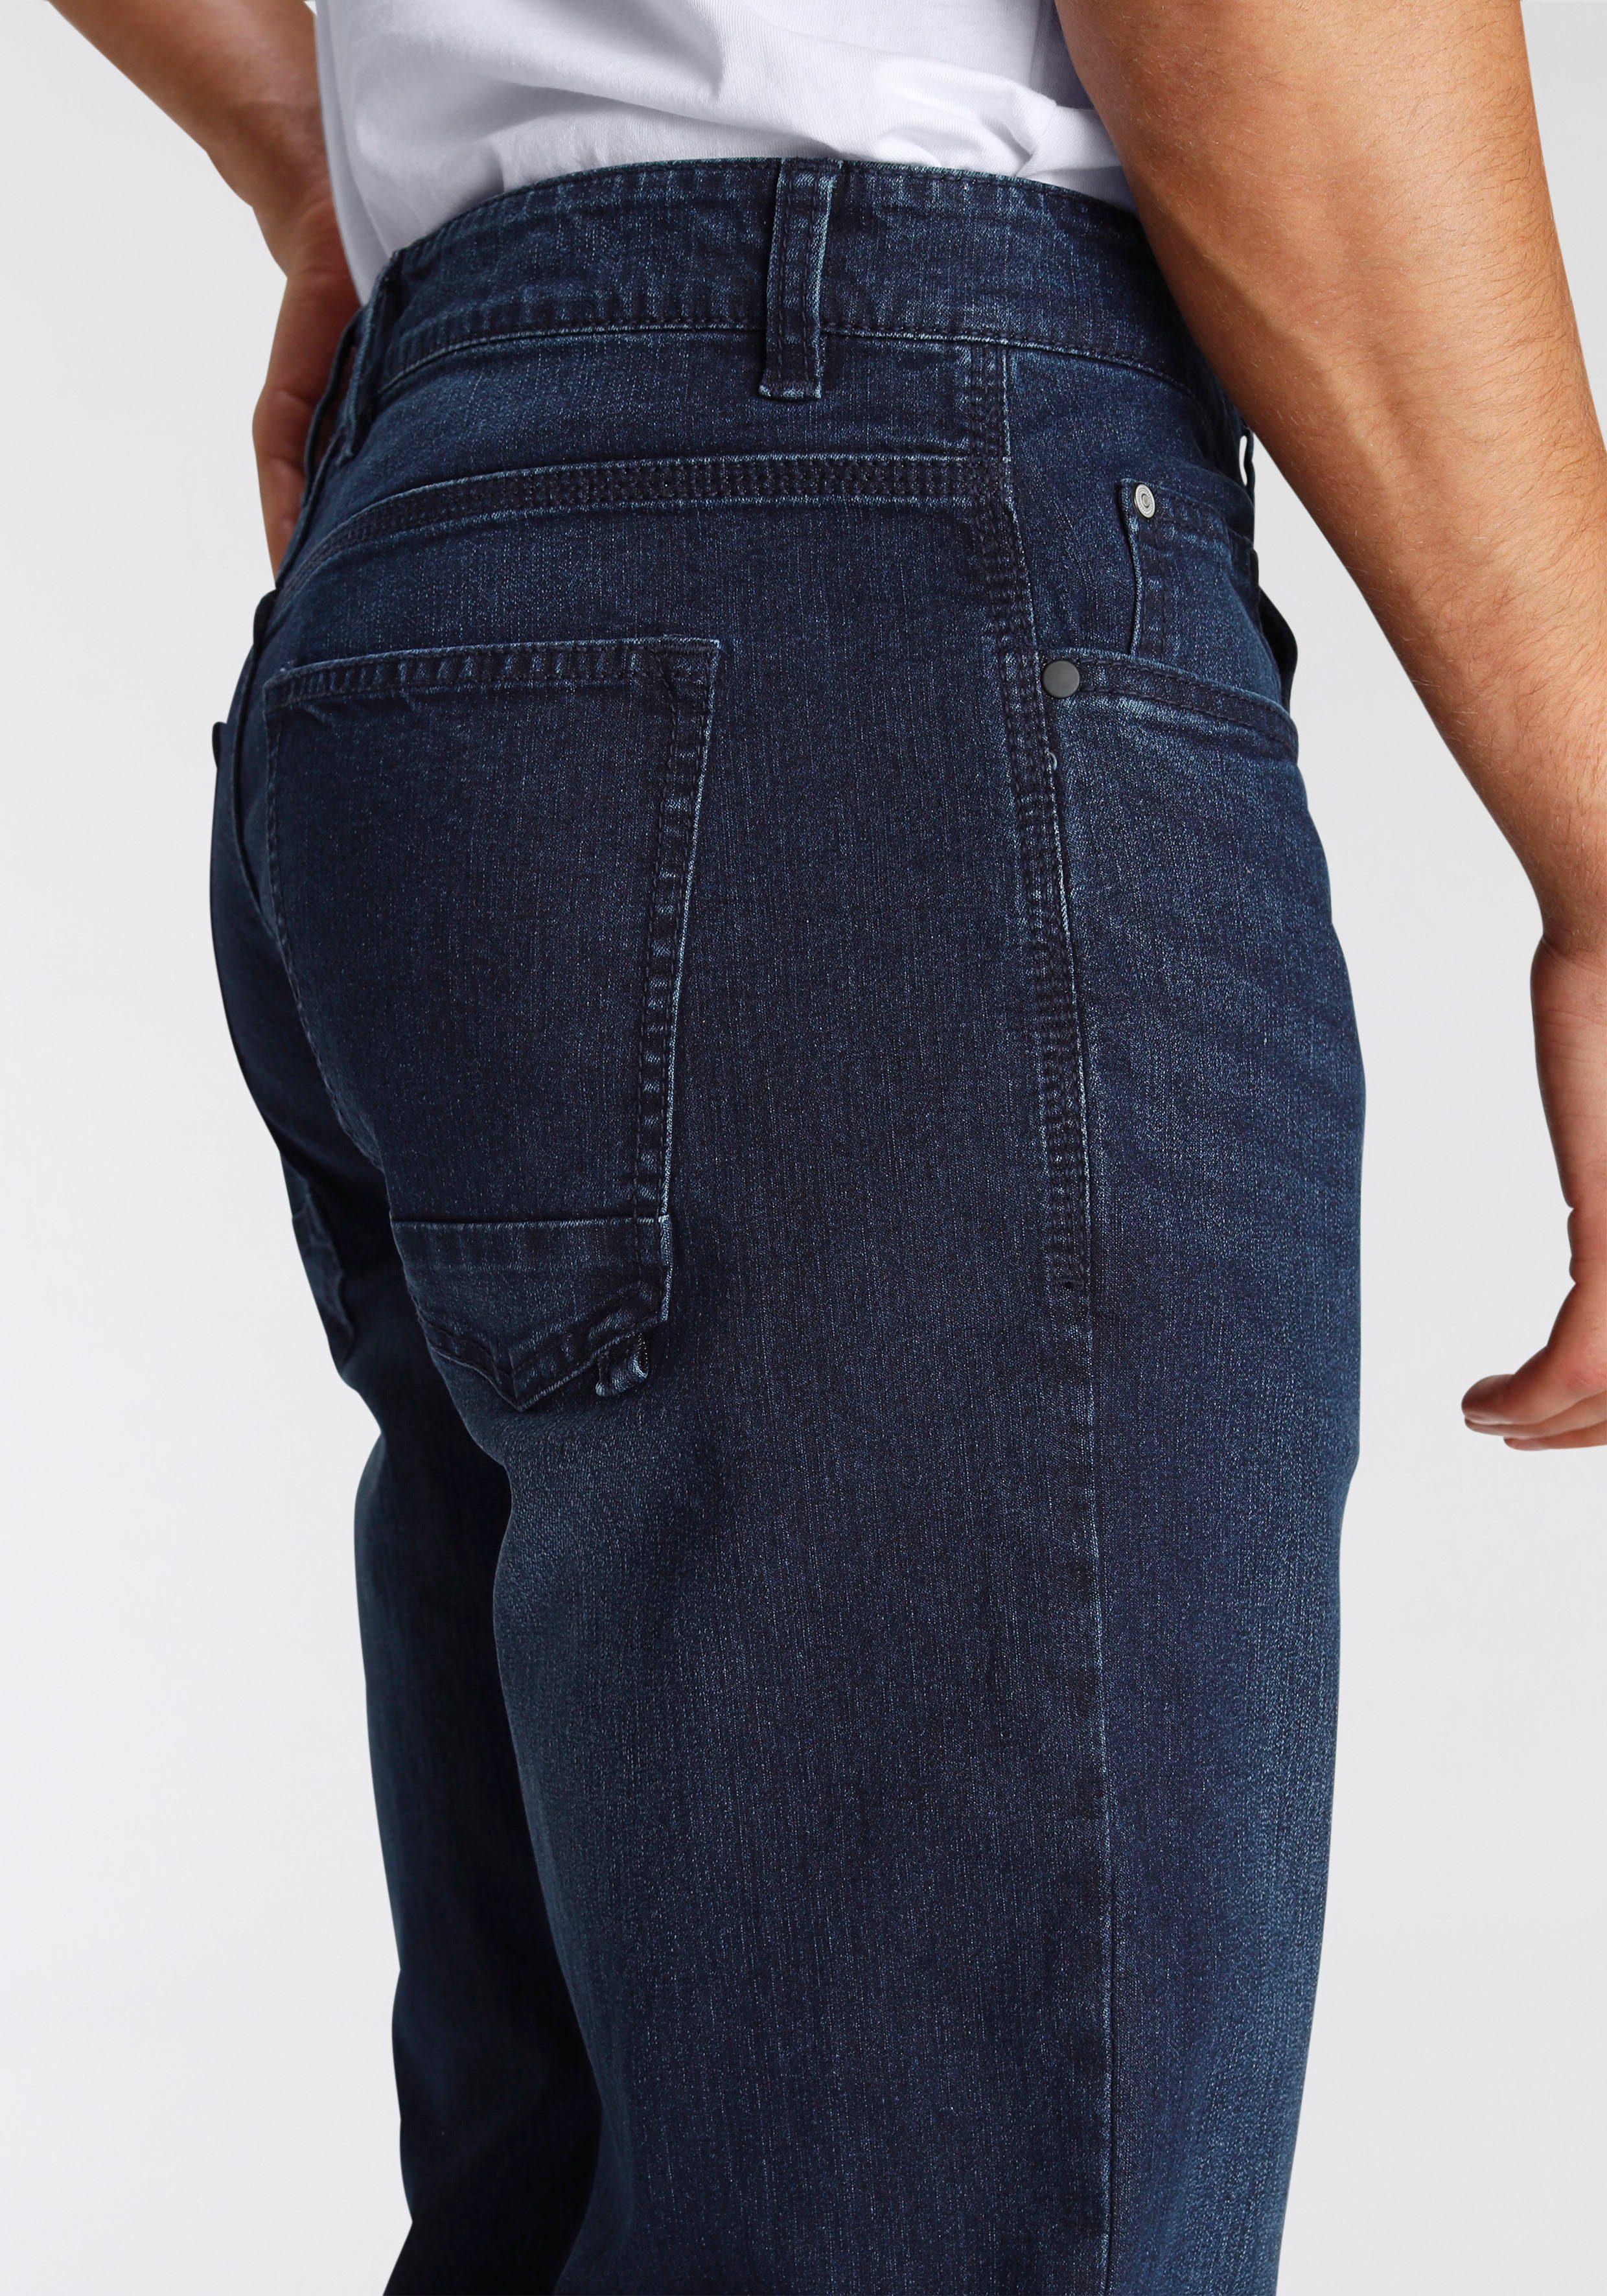 AJC Straight-Jeans dark Waschung blue leichter mit